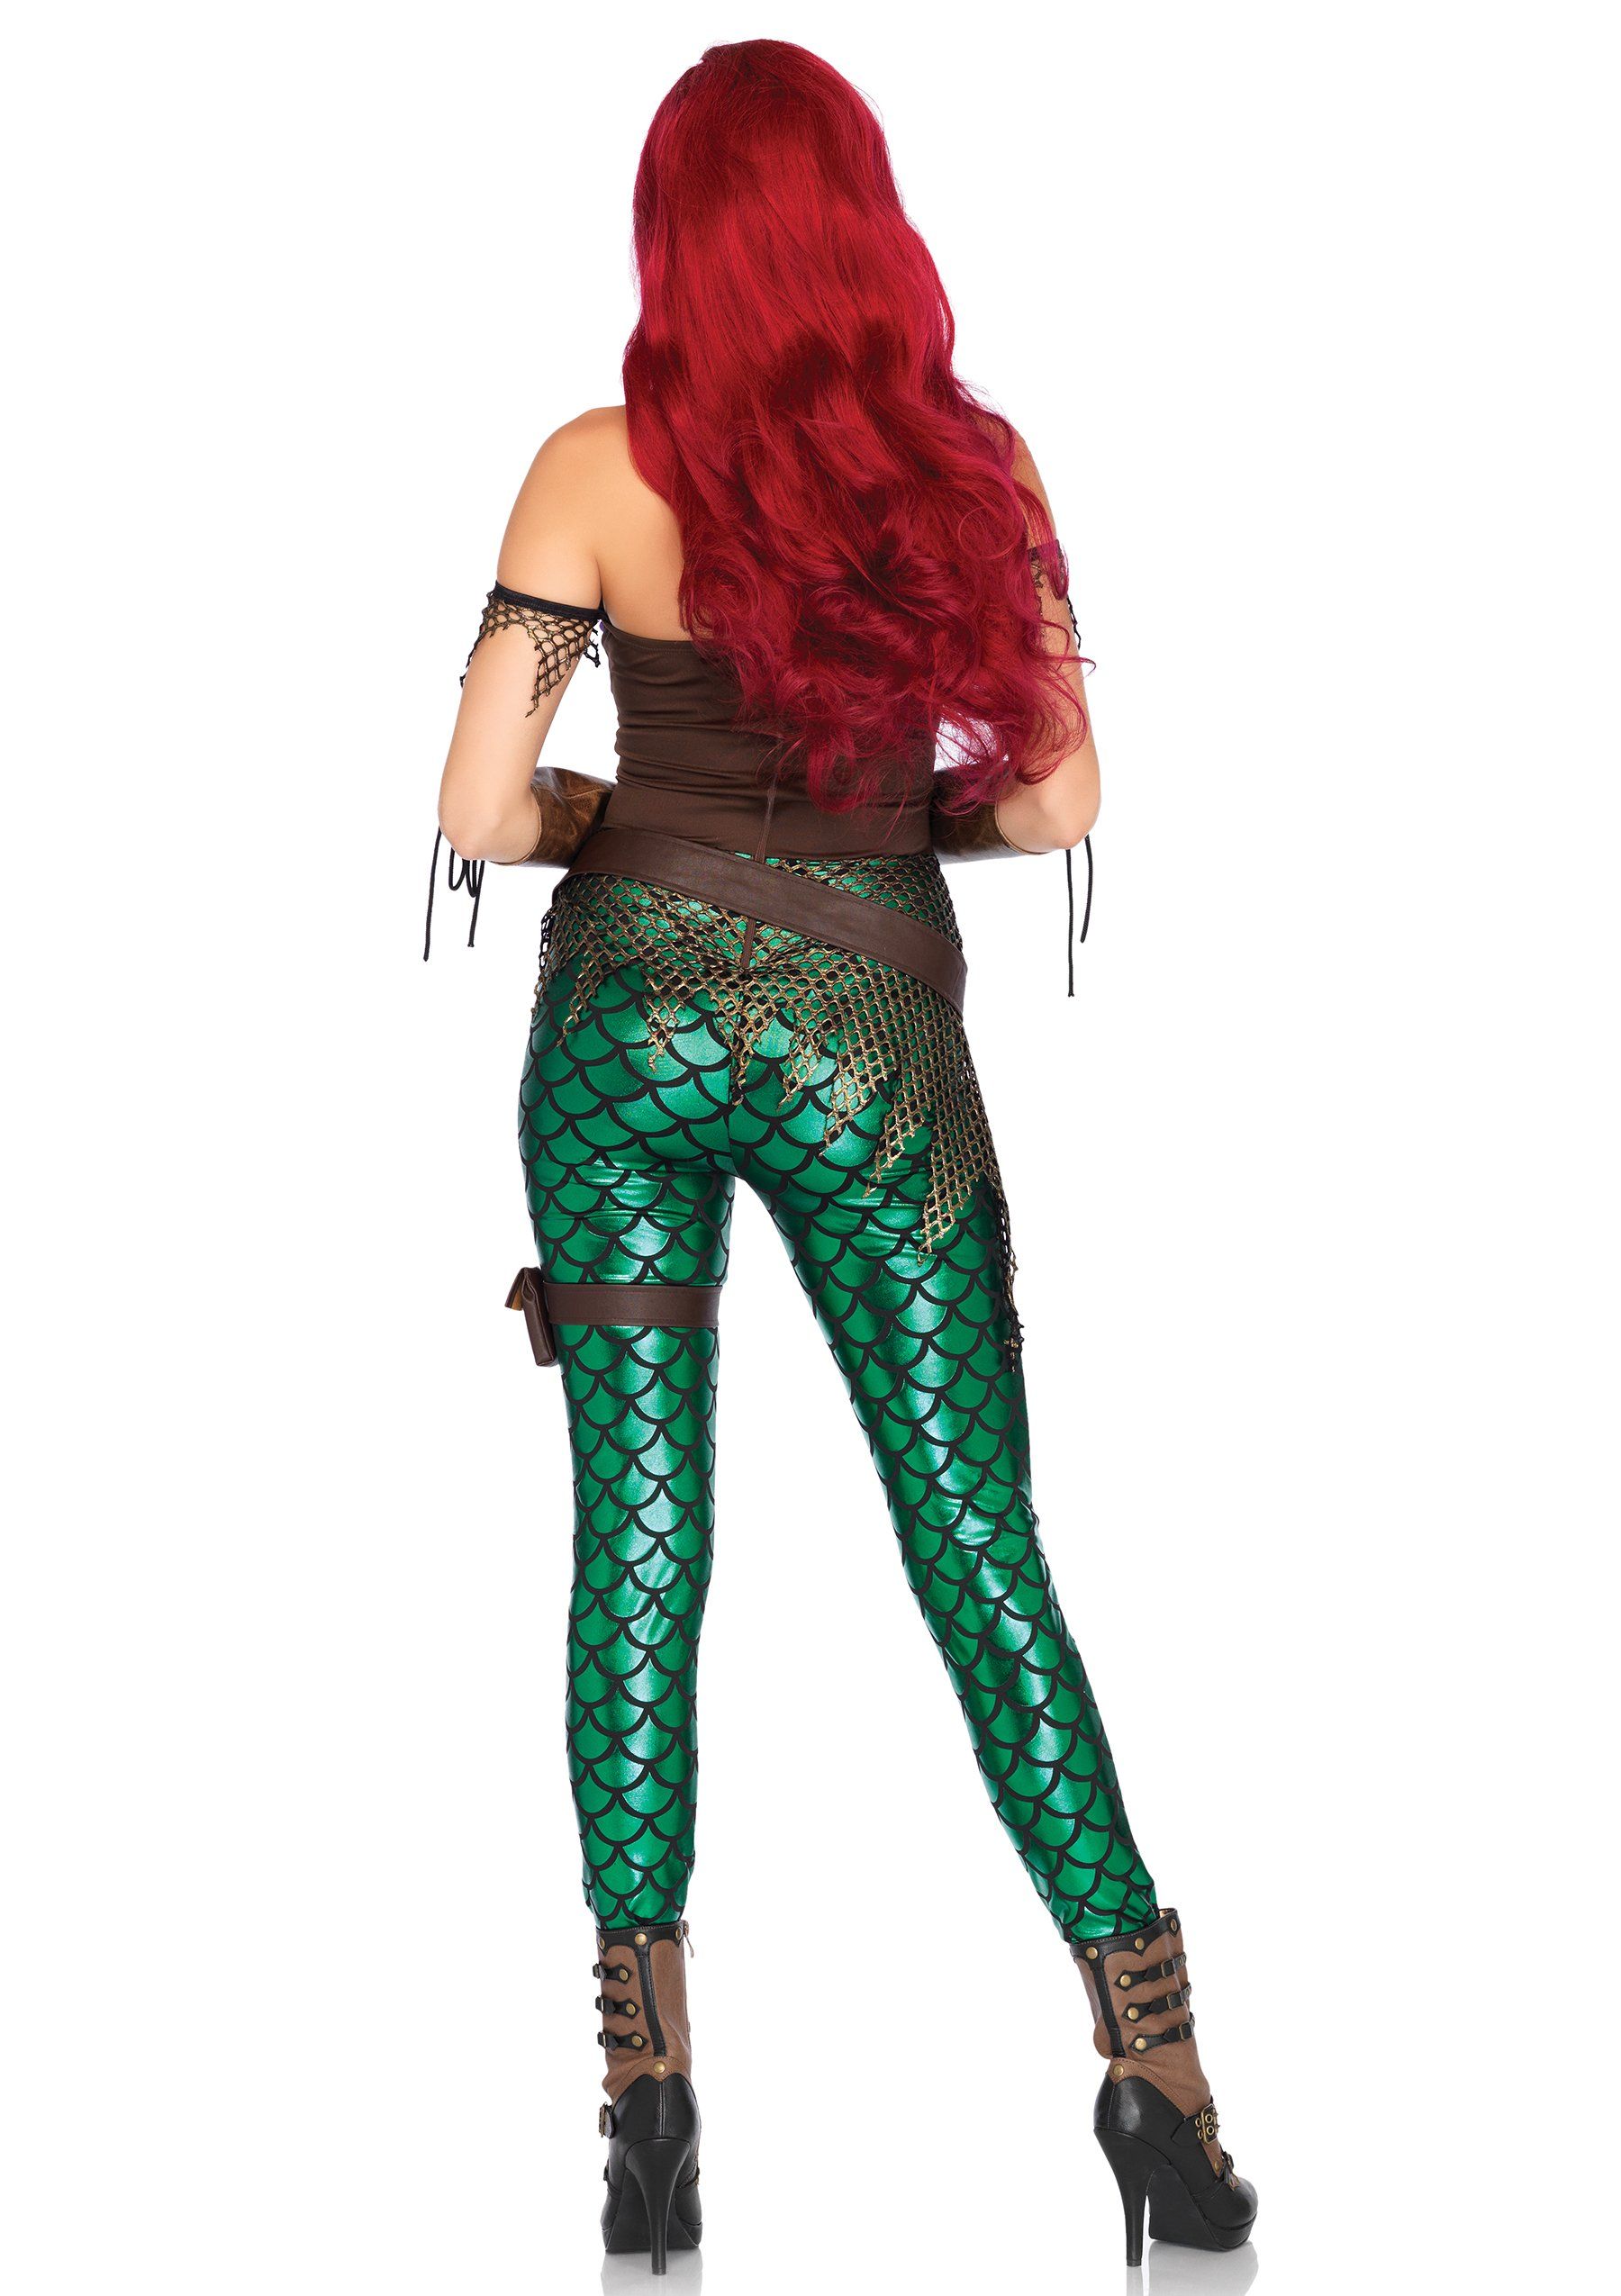 Rebel Mermaid Costume